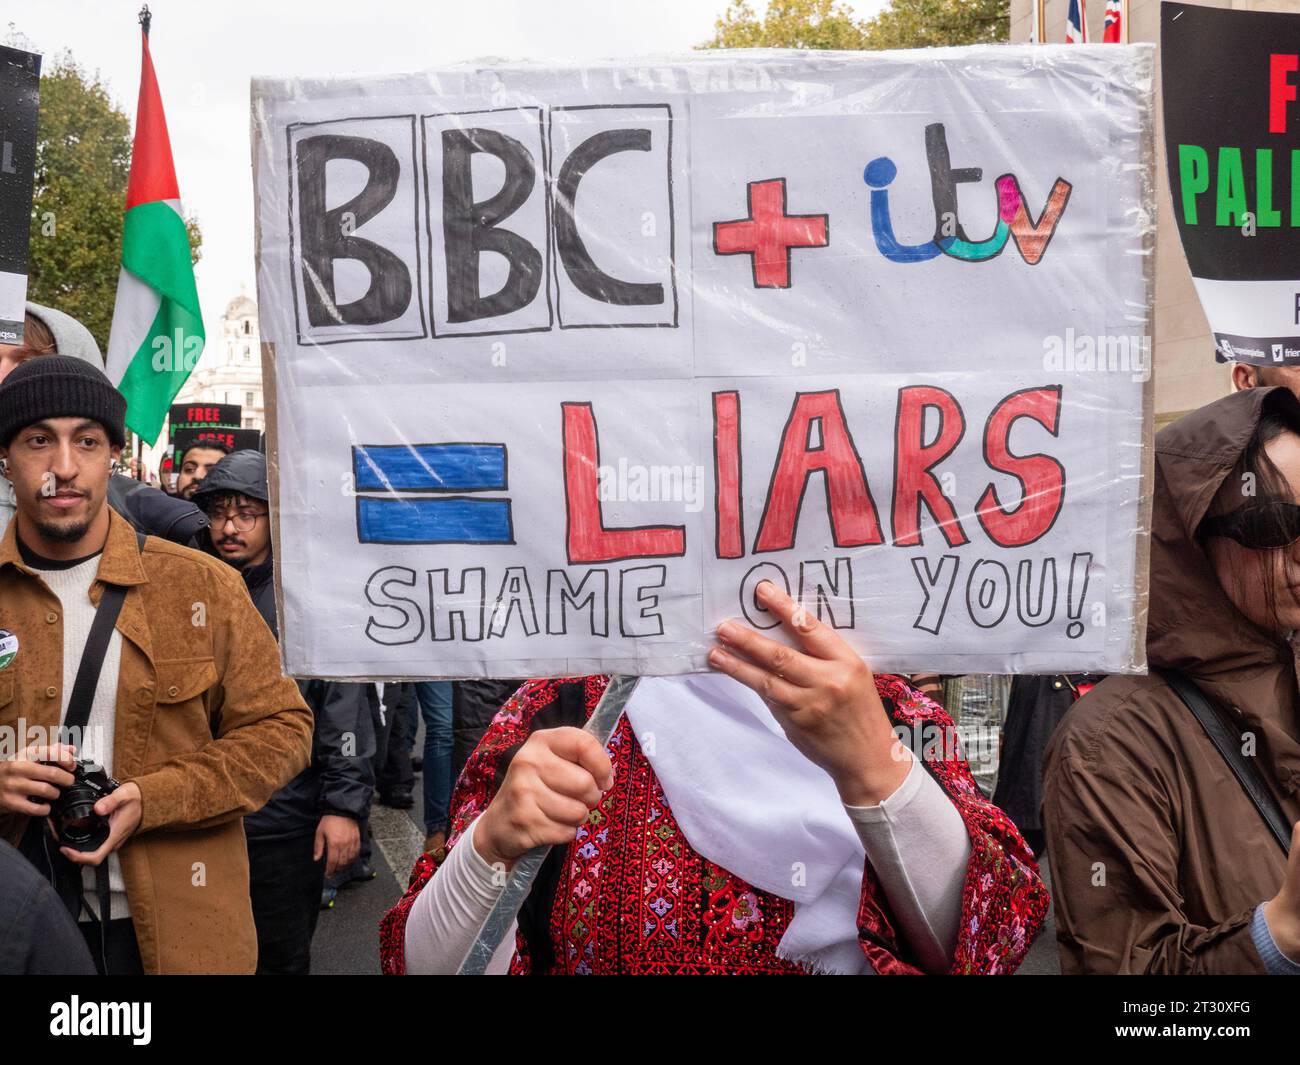 Manifestanti pro-palestinesi a Londra, nel Regno Unito, alla manifestazione della marcia Nazionale per la Palestina fermare la guerra a Gaza, marciare per protestare contro il confict di Israele Palestina sulla Striscia di Gaza. Manifestanti con cartellone pubblicitario Anti BBC e Anti ITV che protestano sulla copertura del conflitto di Gaza sui canali televisivi di notizie del Regno Unito Foto Stock